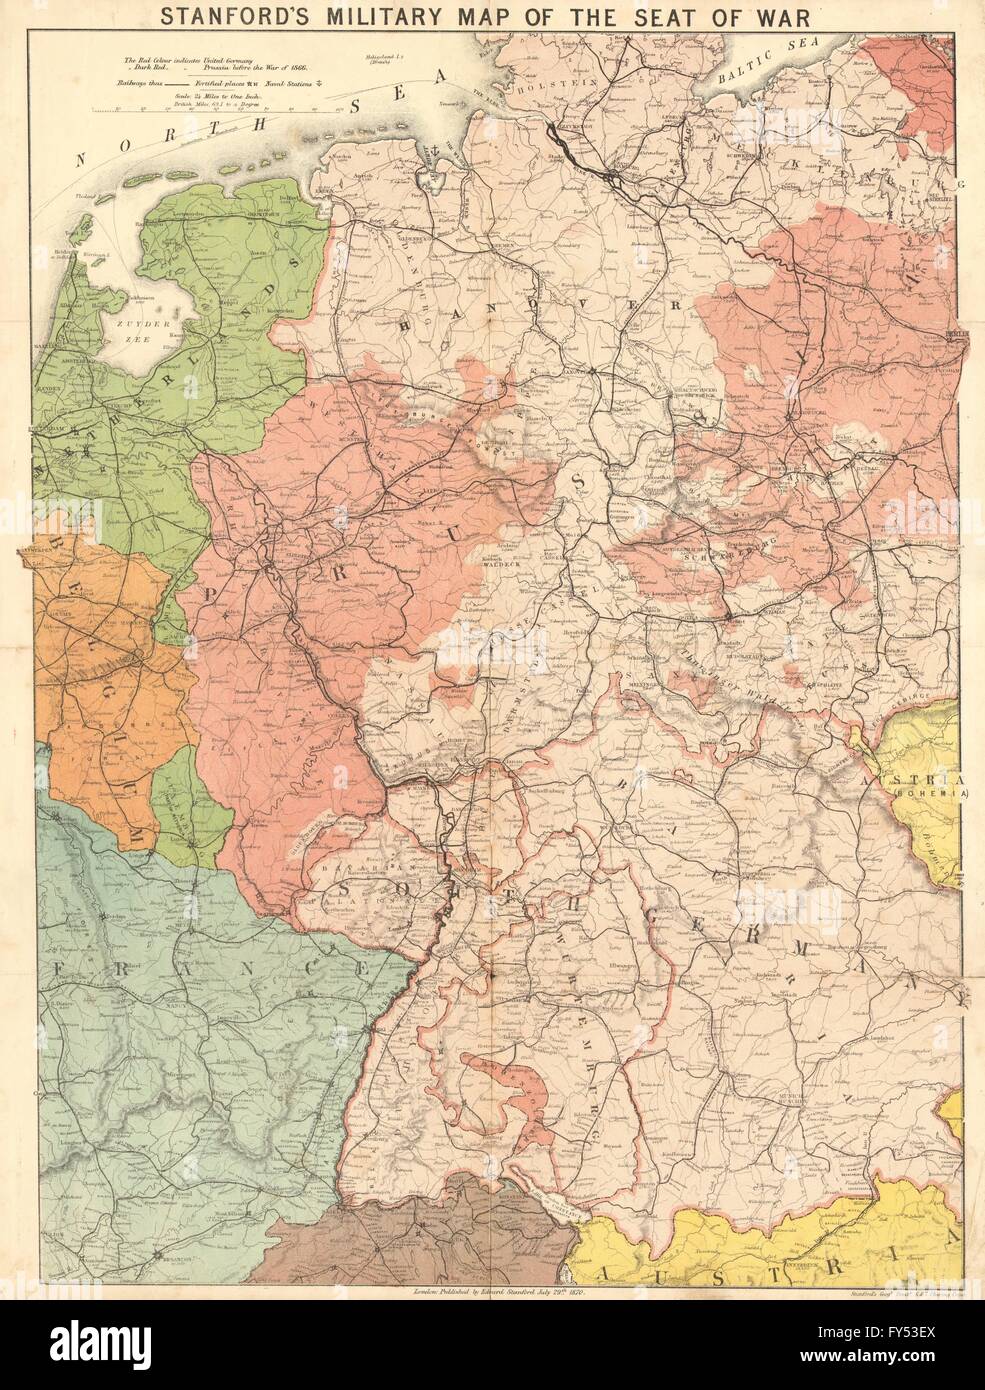 'Princeton's carte militaire du siège de la guerre". Guerre franco-prussienne. Allemagne 1870 Banque D'Images